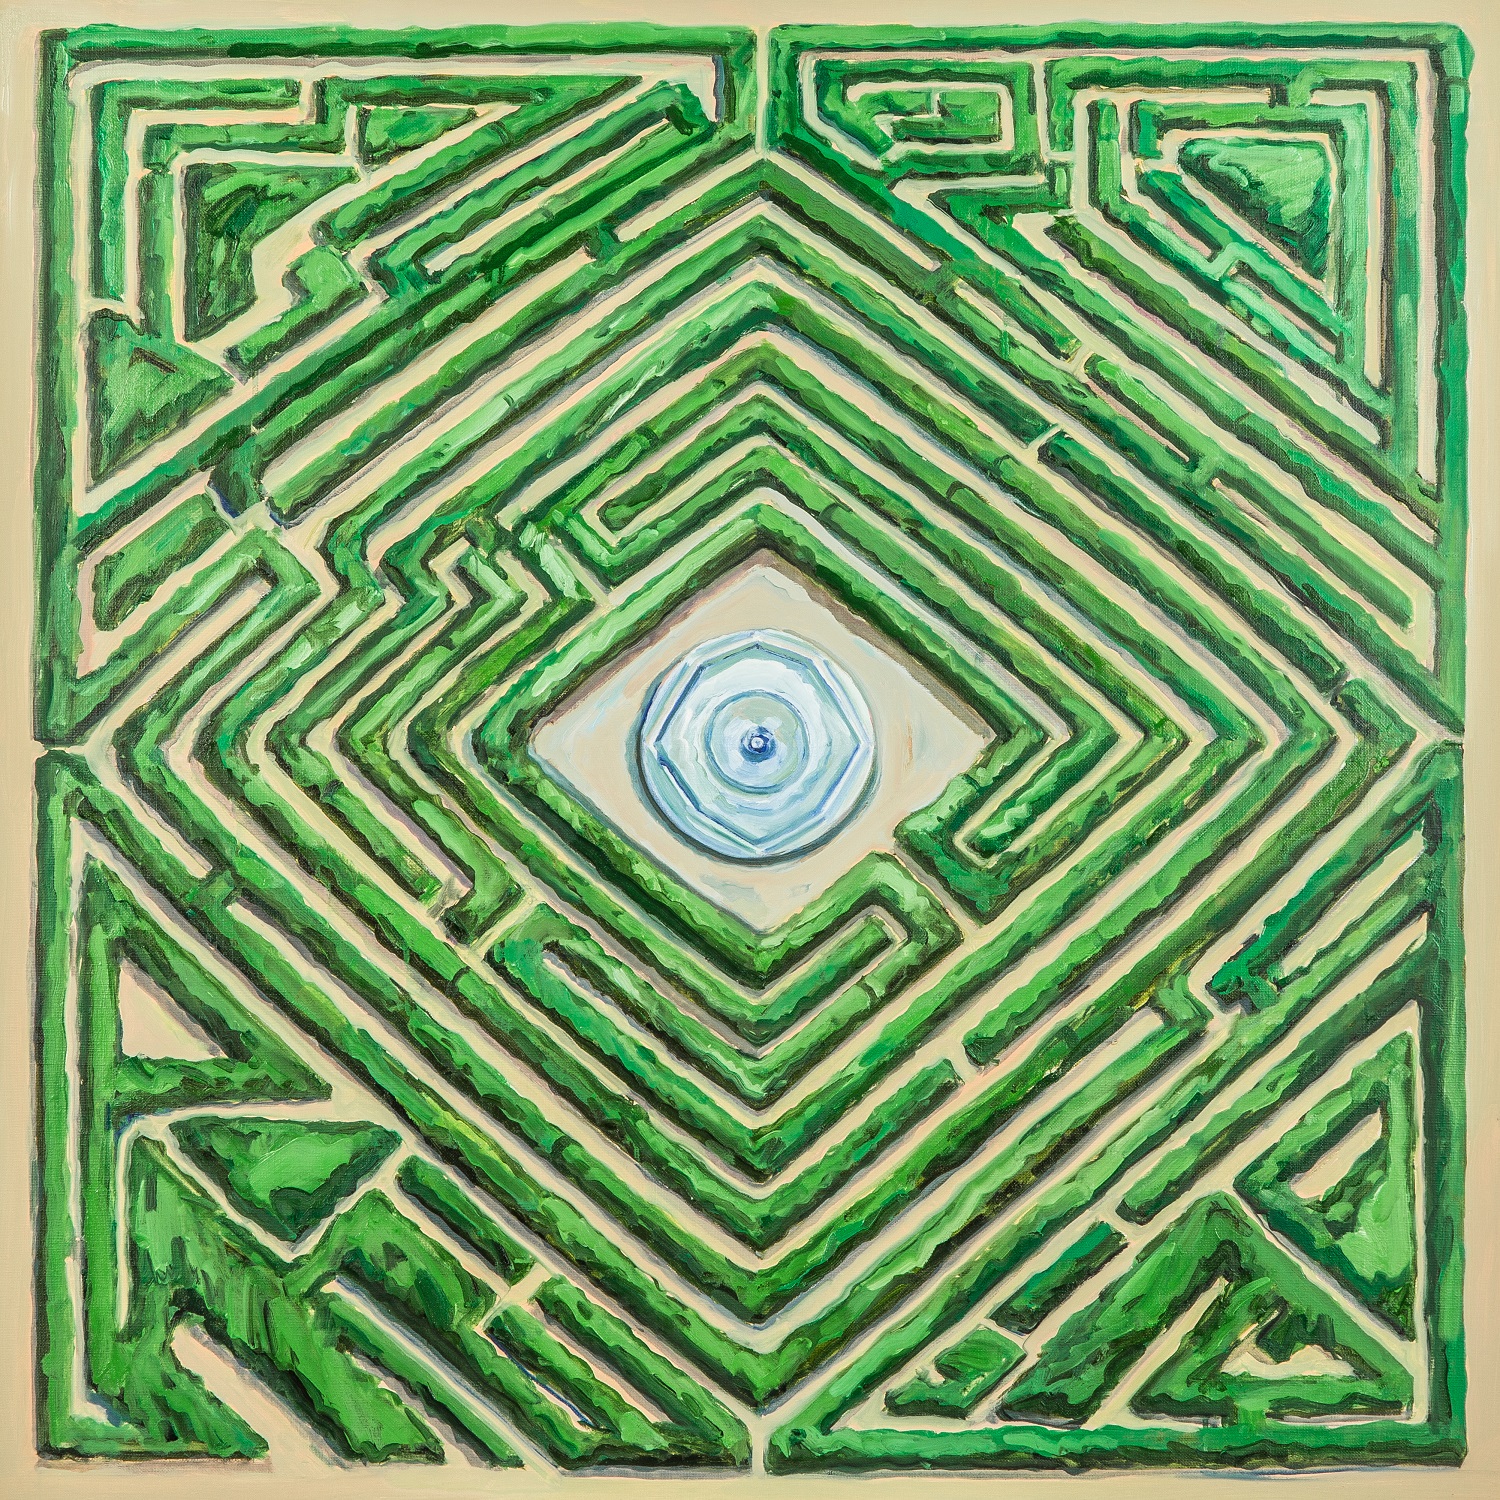 Maze Garden Cover.jpg